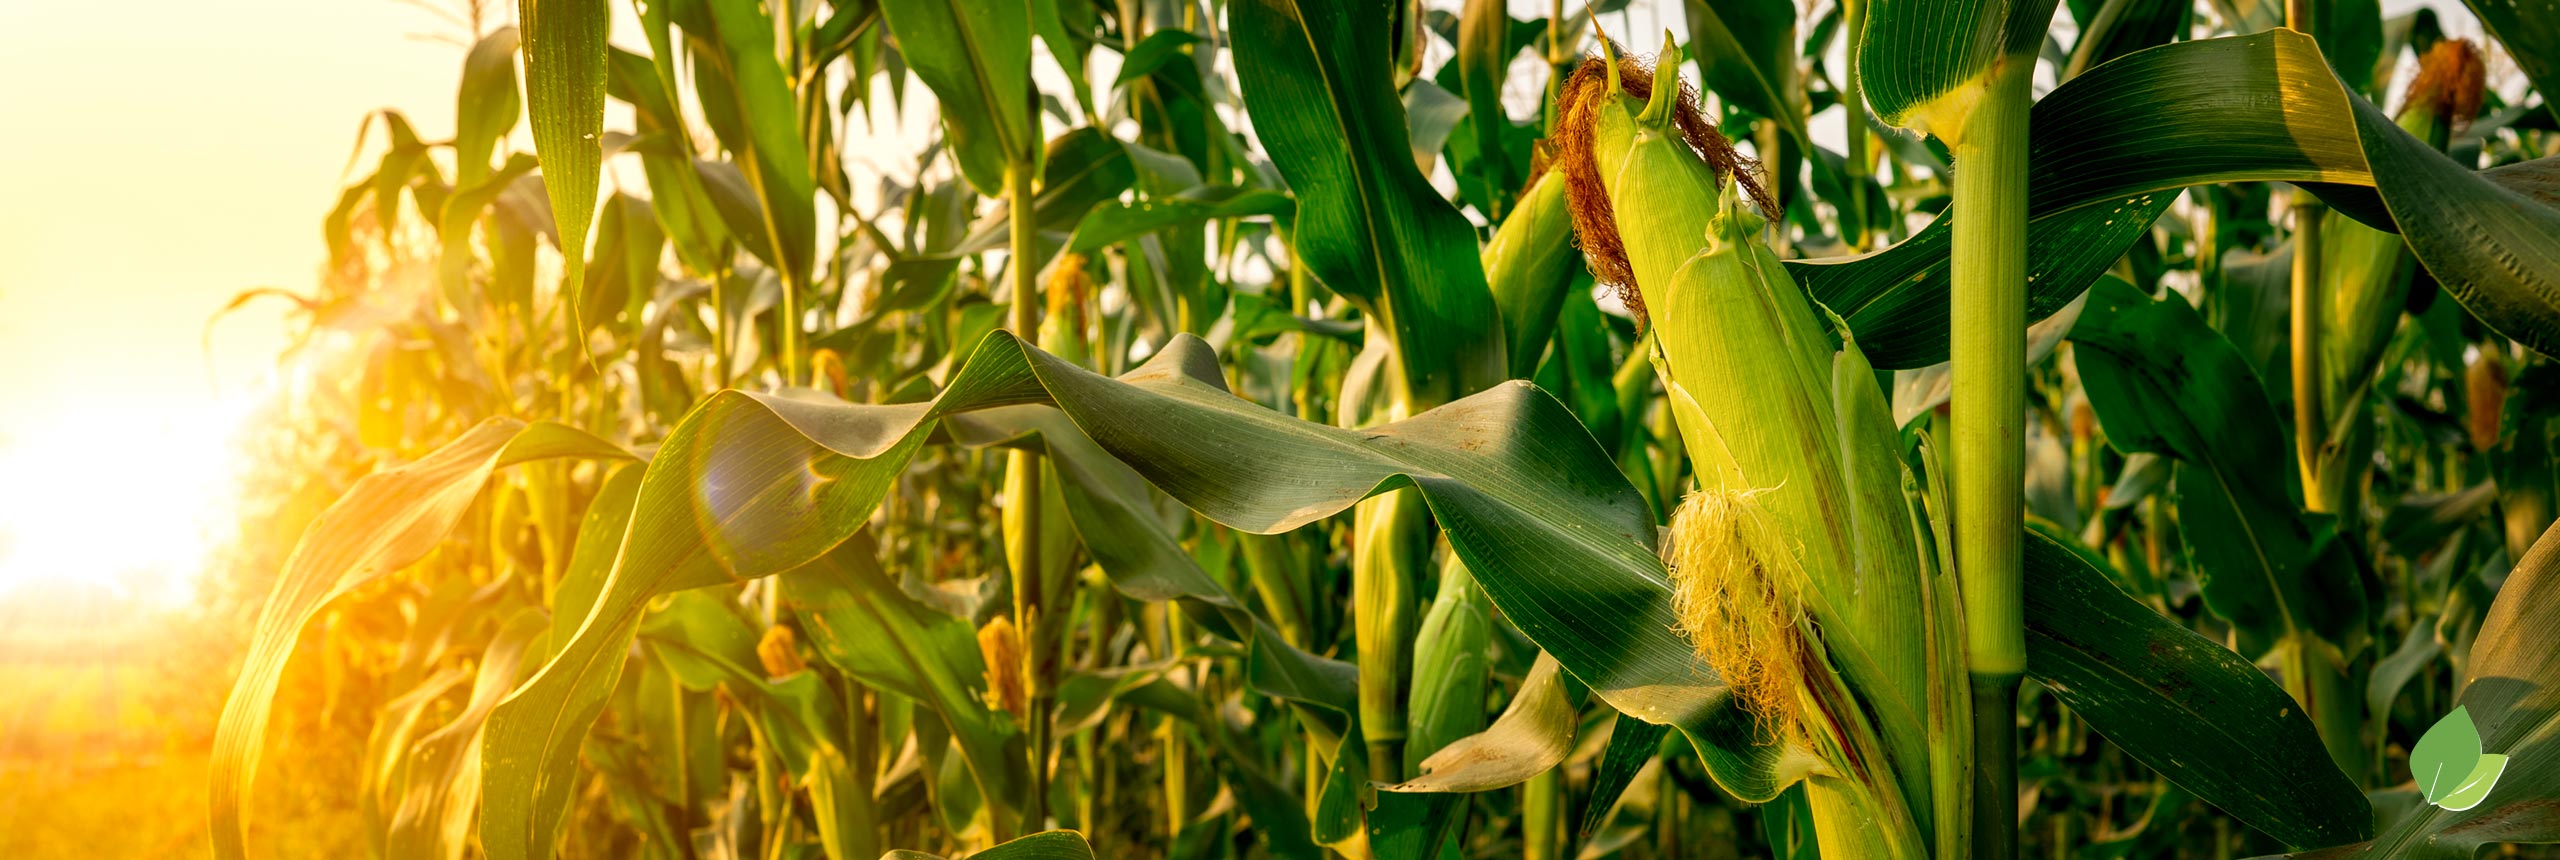 Corn Field Innova Performance Products